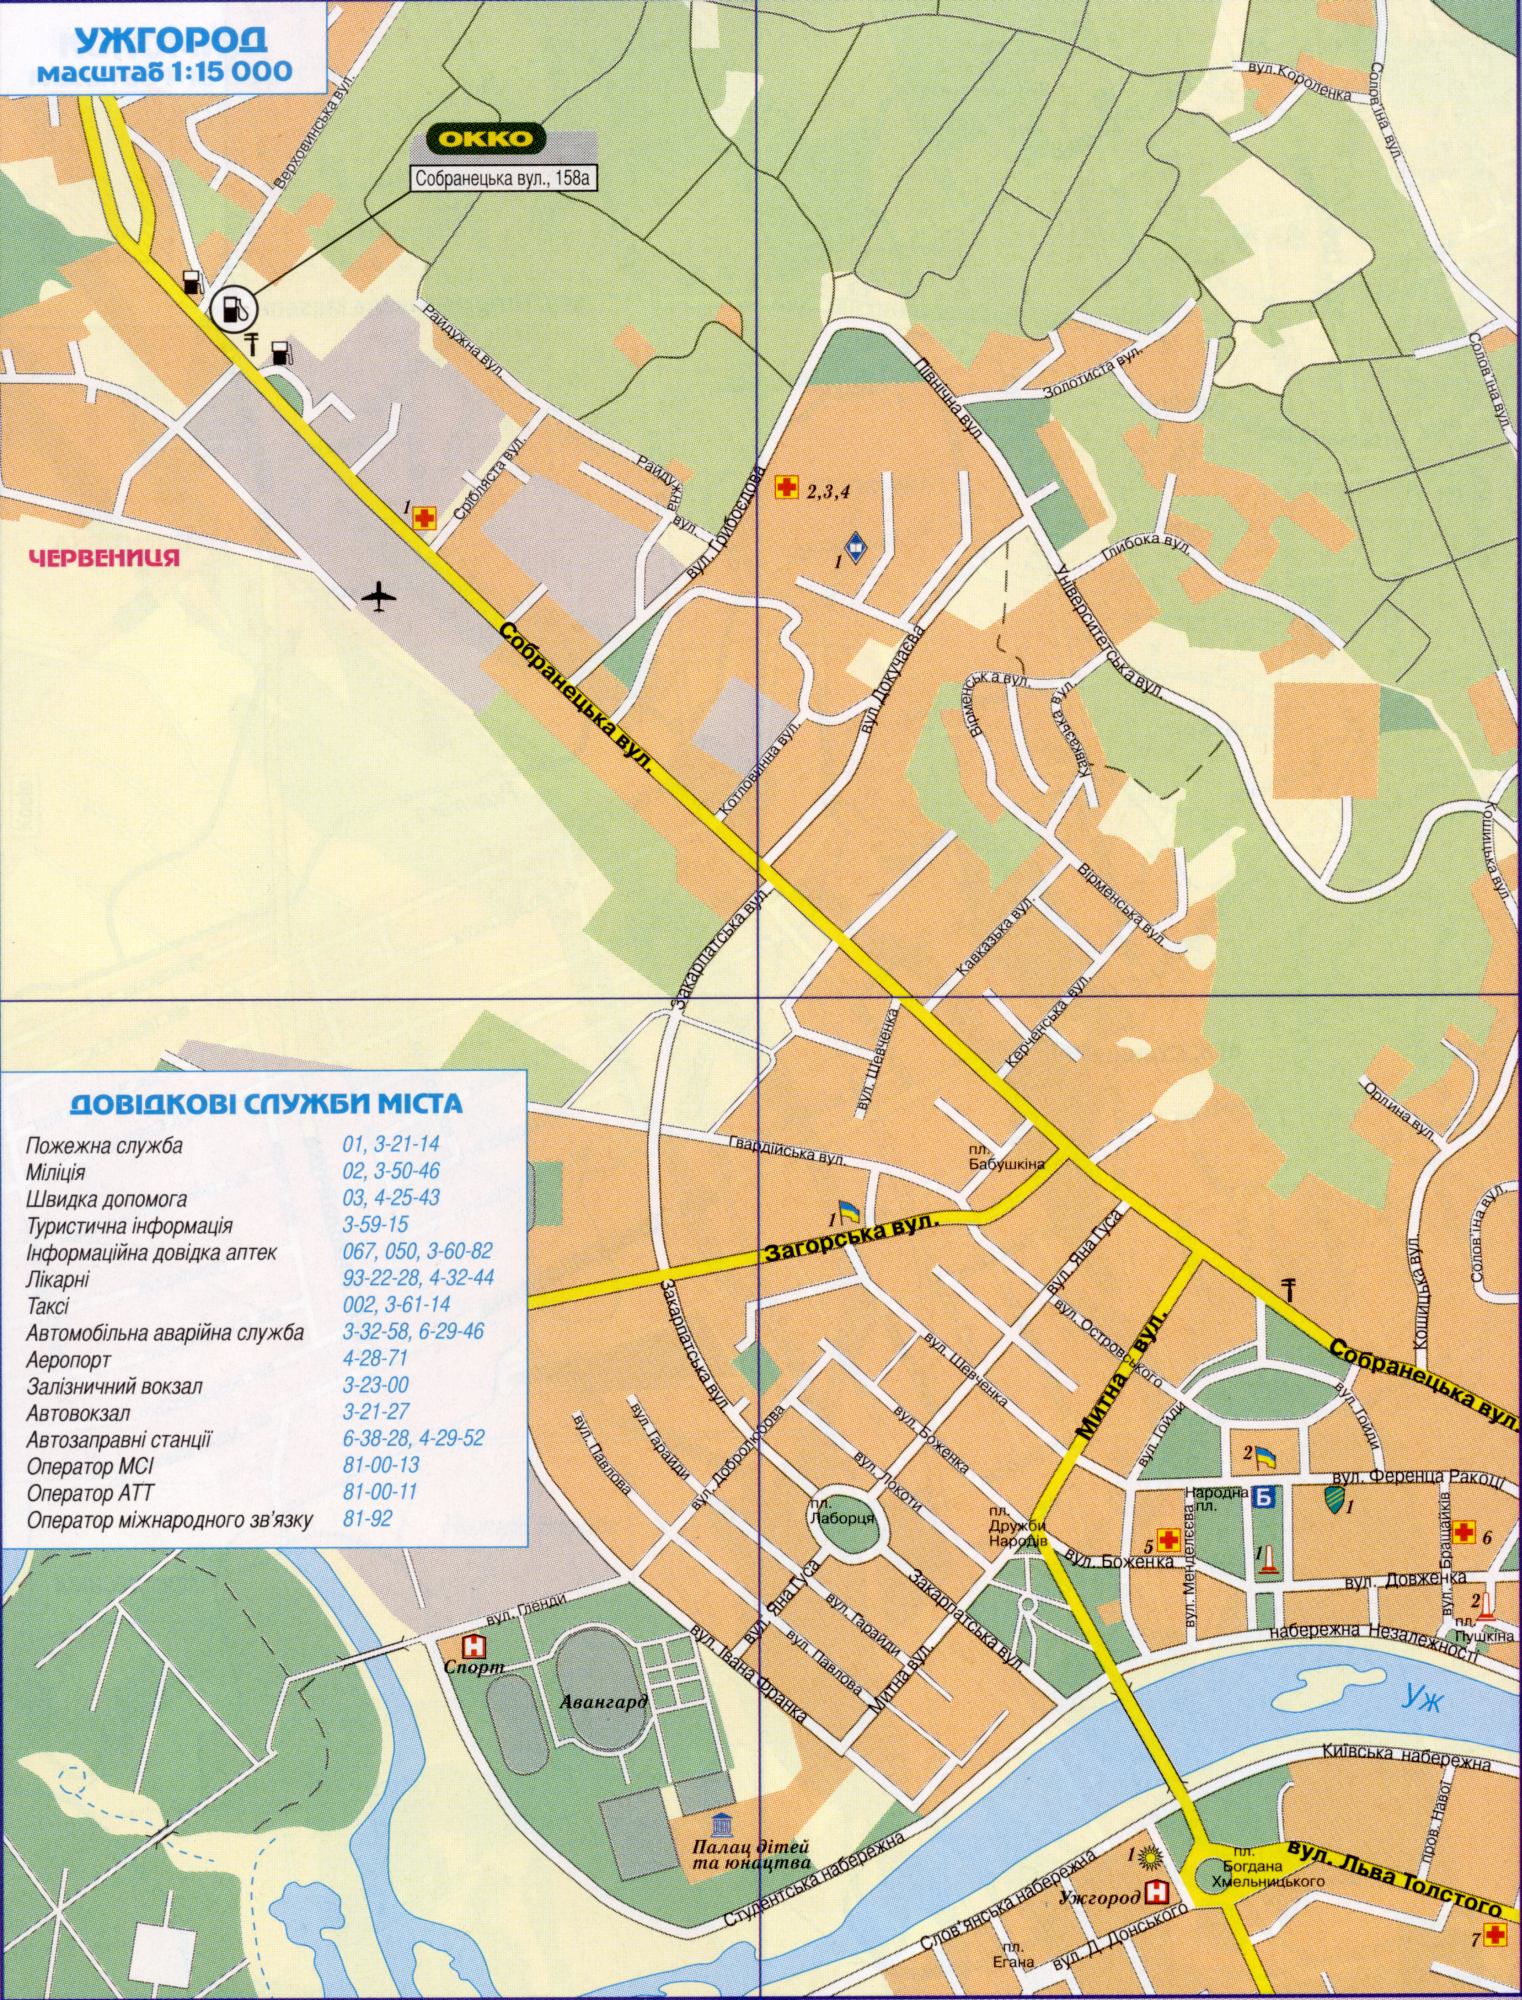 Карта Ужгорода подробная (Украина карта г.Ужгород) в 1 см 150 метров. Скачать бесплатно подробную карту автомобильных дорог